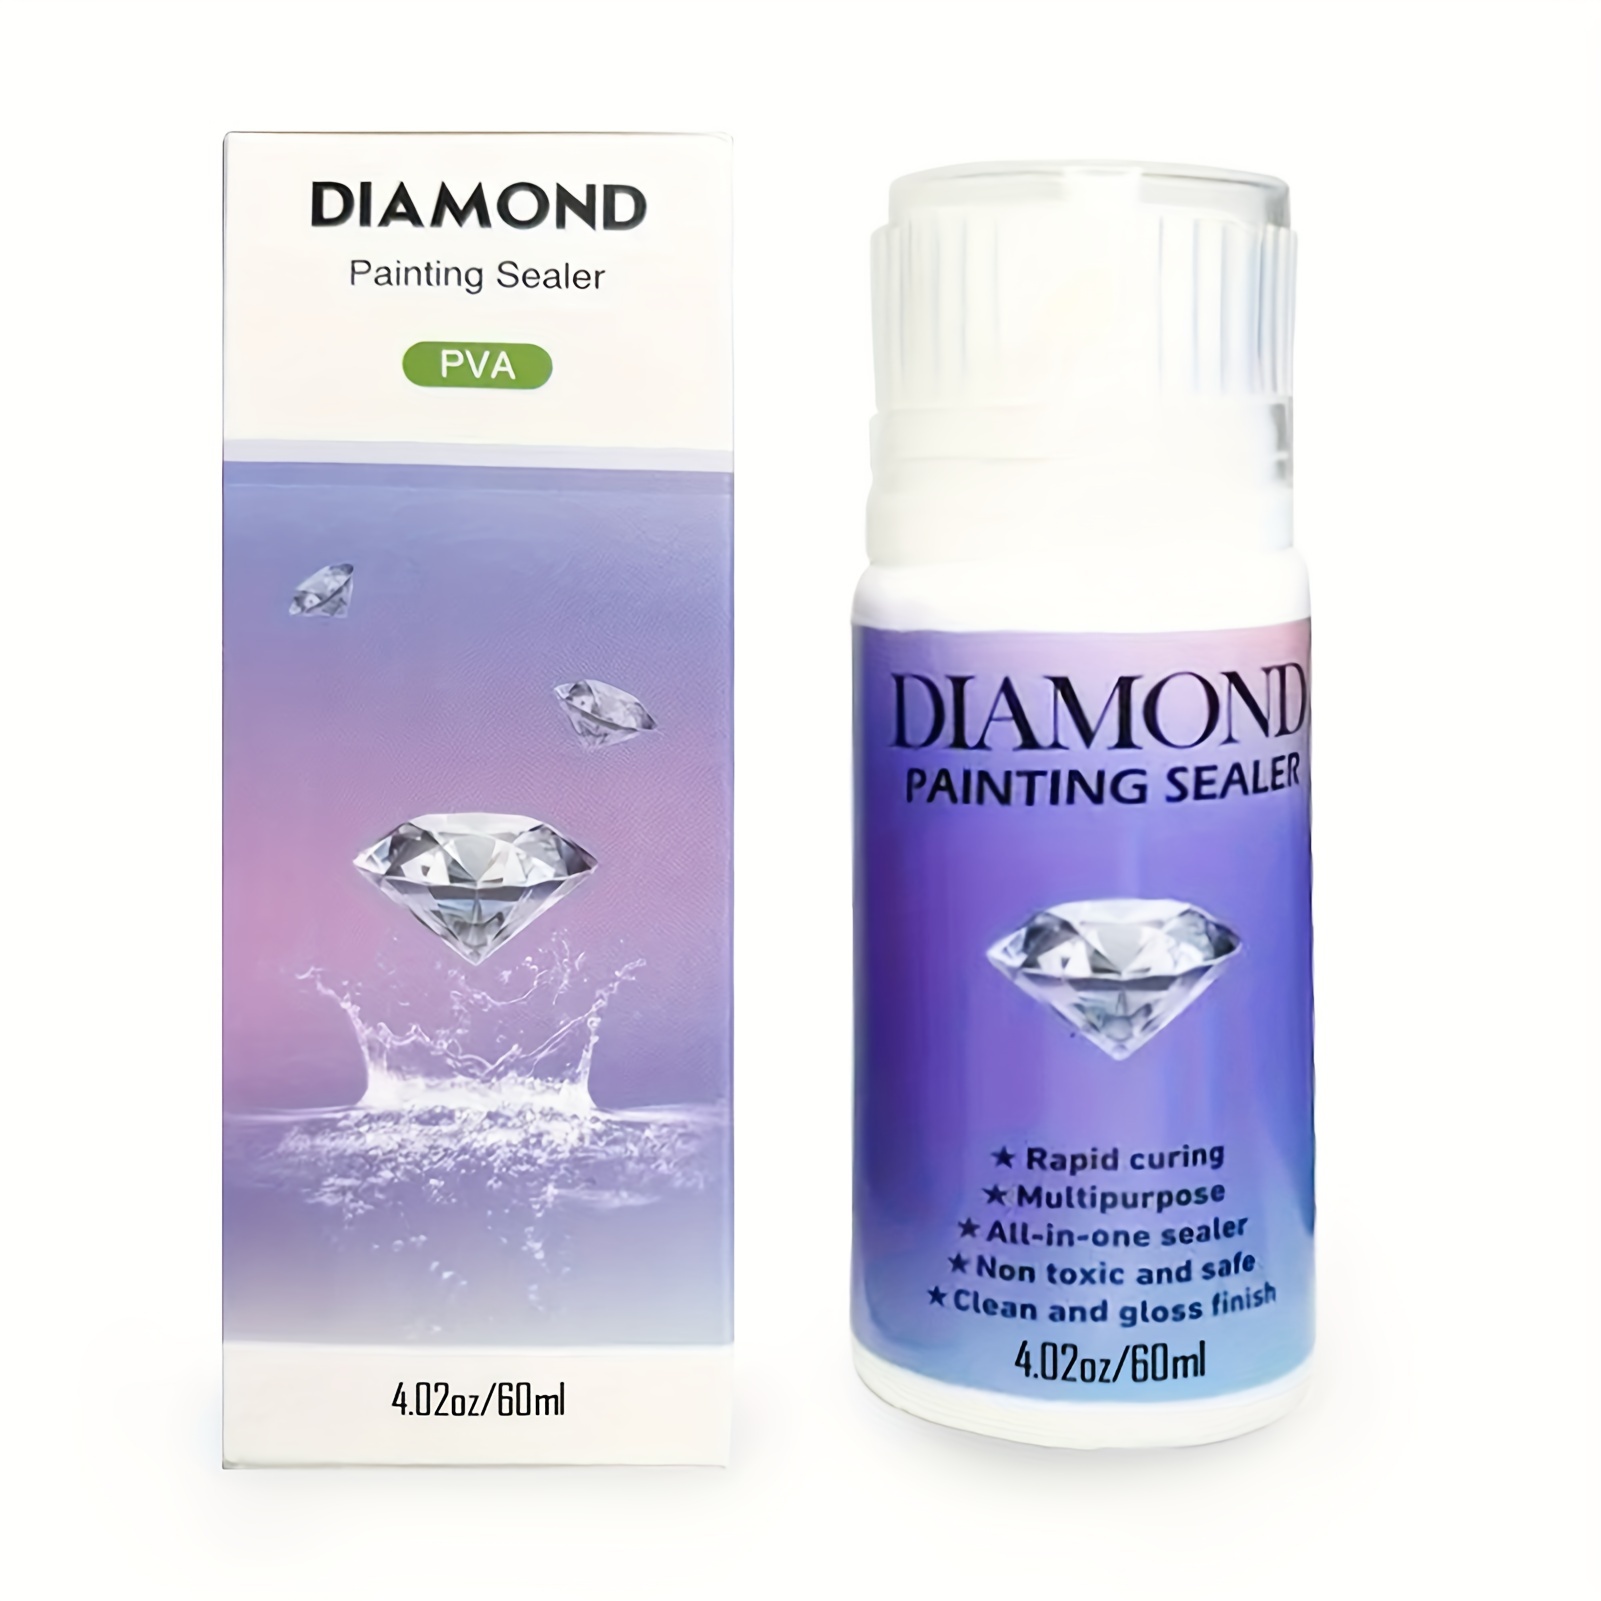 Accesorios Diamond Painting